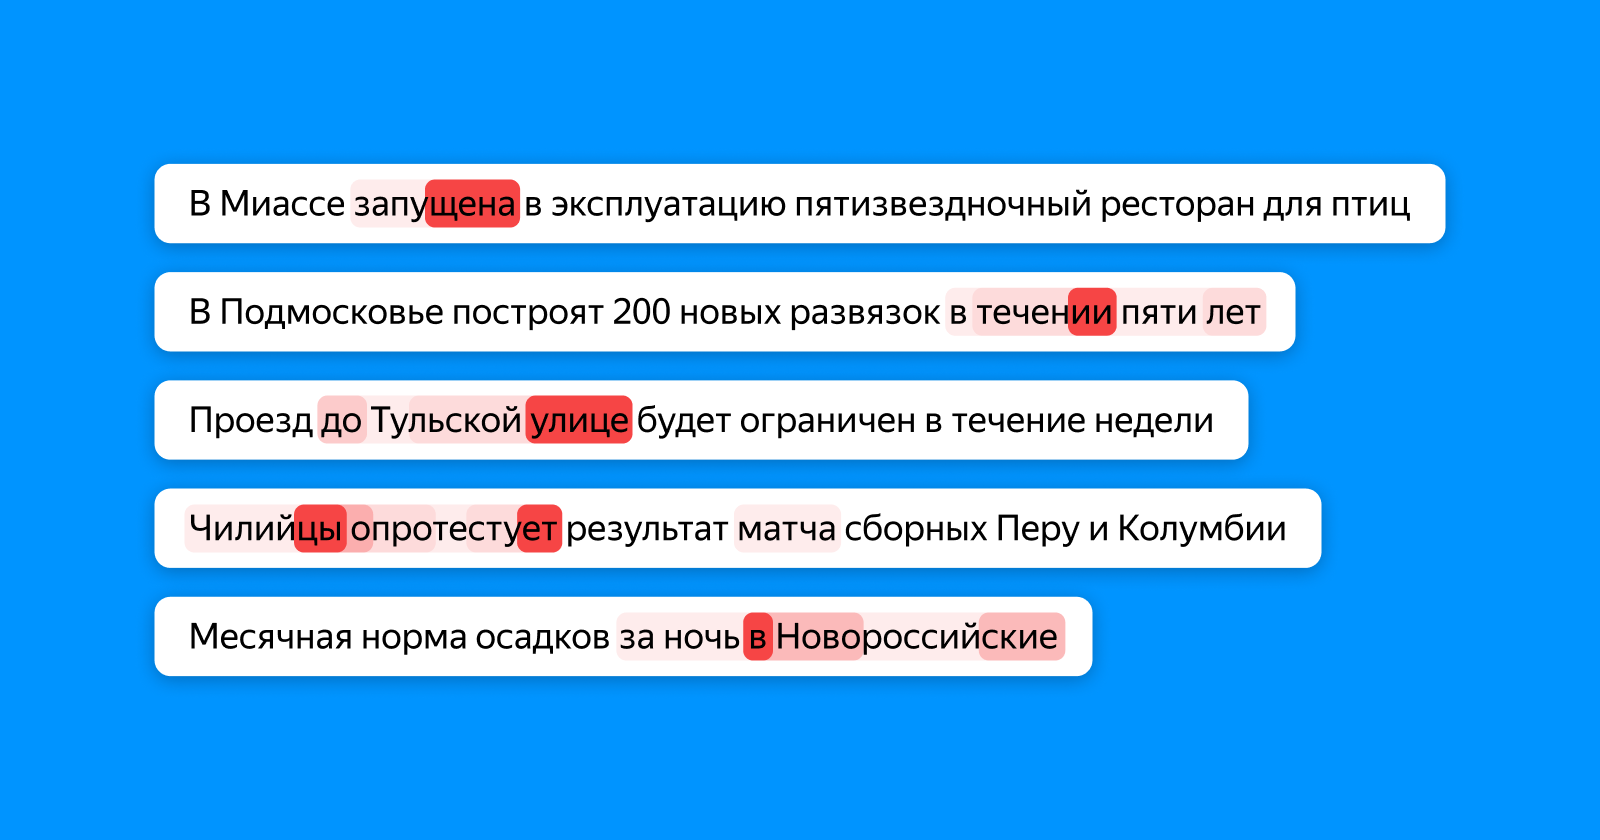 Как Яндекс научил искусственный интеллект находить ошибки в новостях - 1